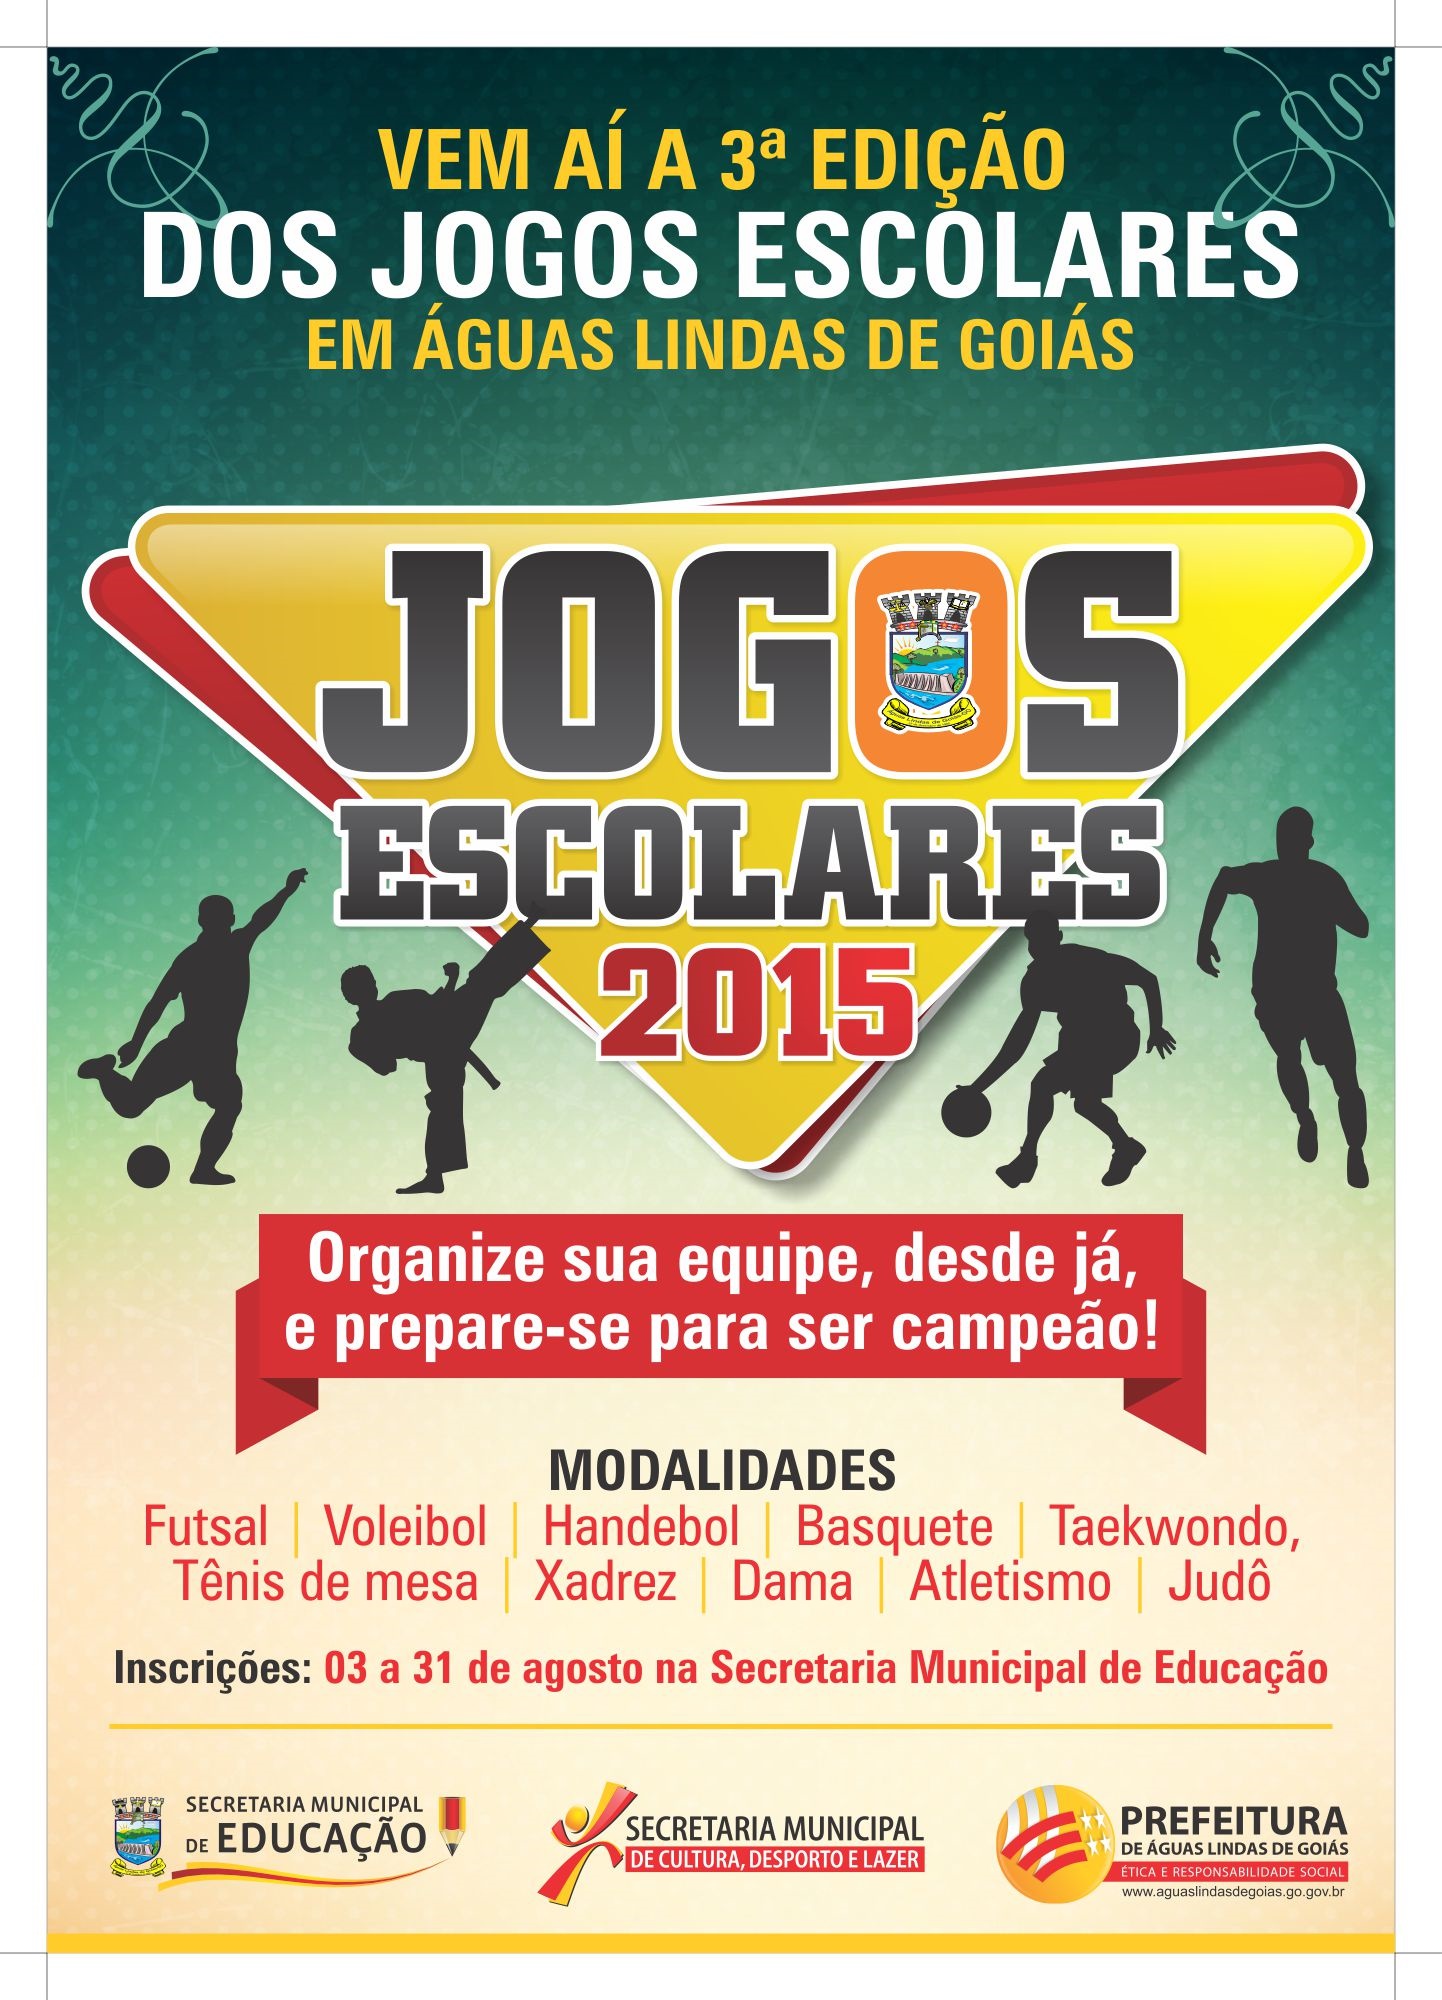 Jogos Escolares 2015 abrem inscrições em Águas Lindas - Águas